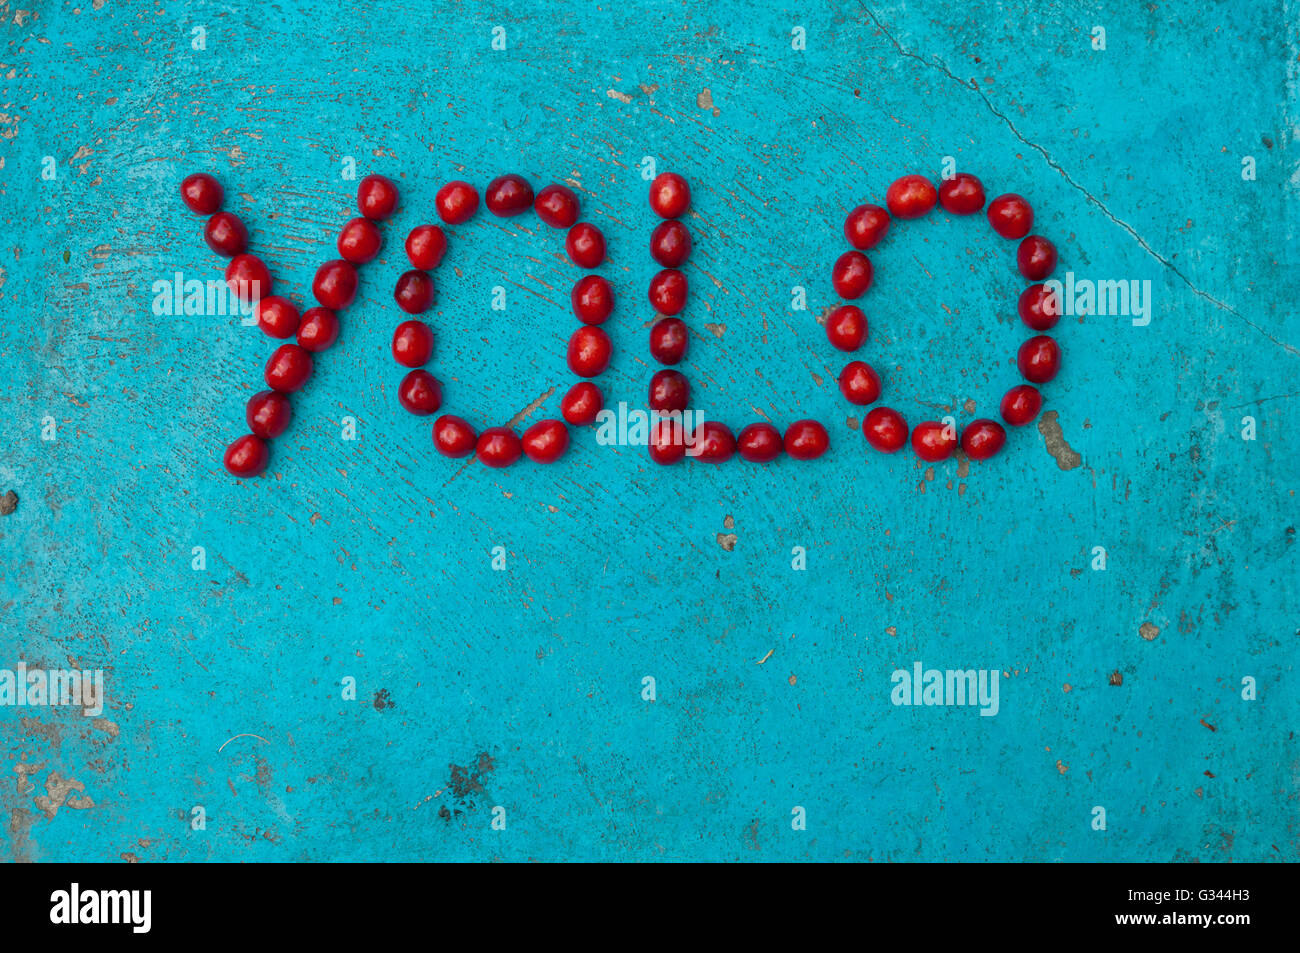 Kirschen, angeordnet, um das Wort YOLO auf strukturierten blauen Hintergrund bilden Stockfoto